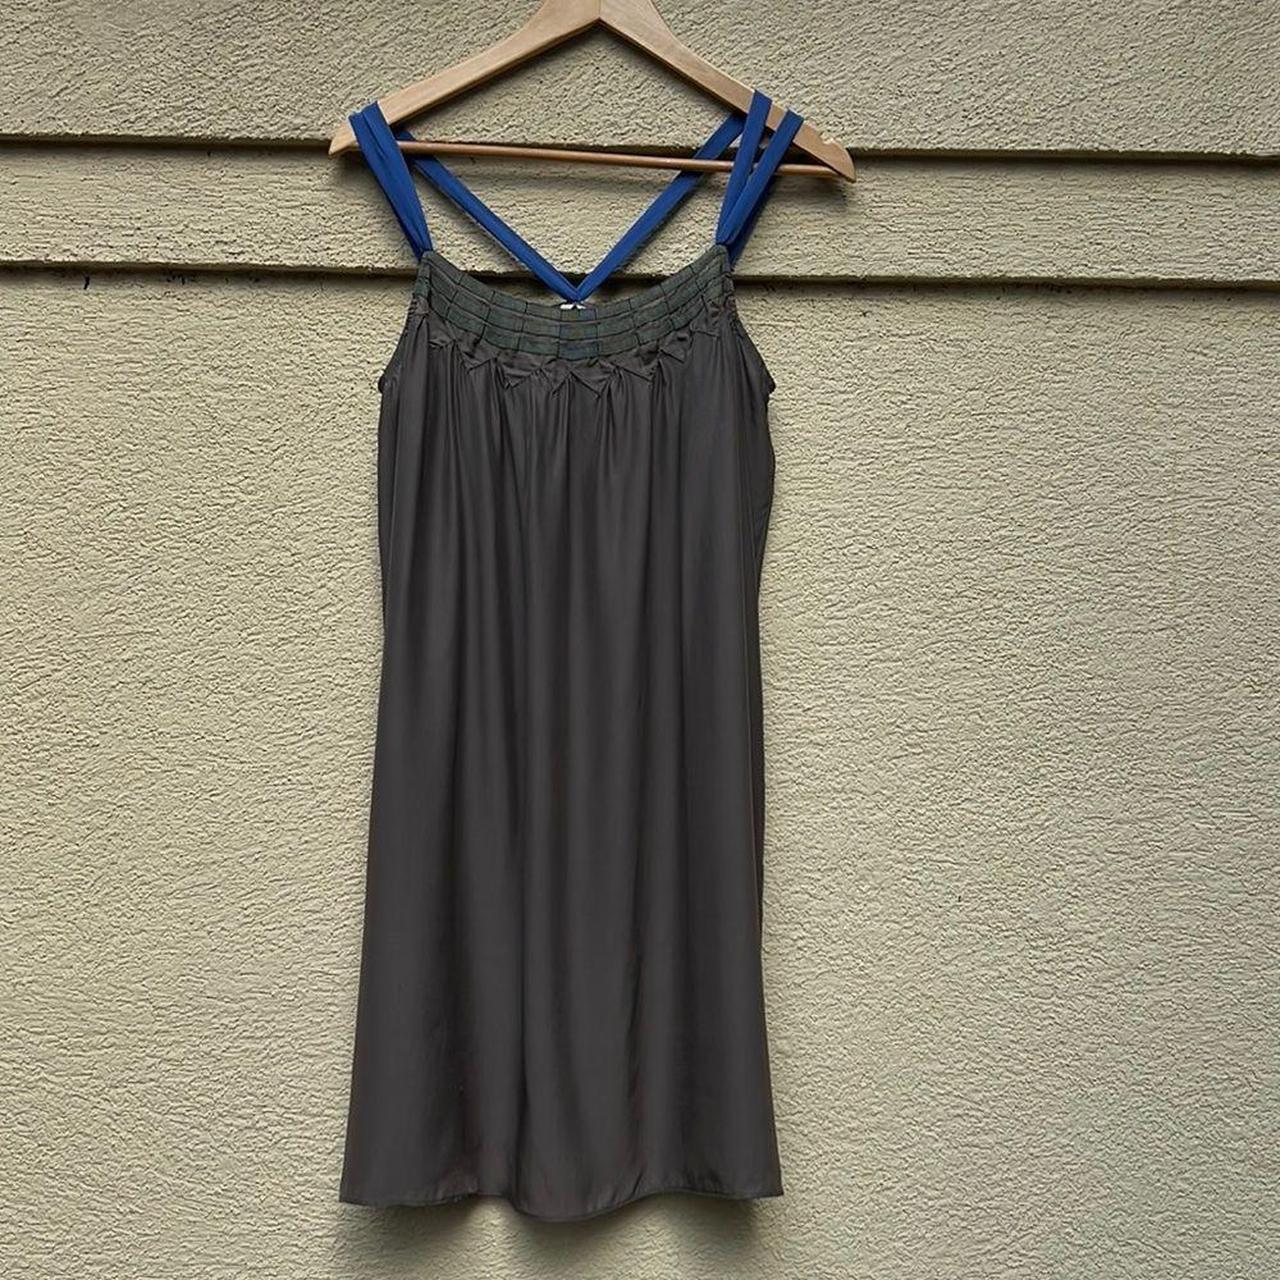 Product Image 1 - IRO 100% silk dress size